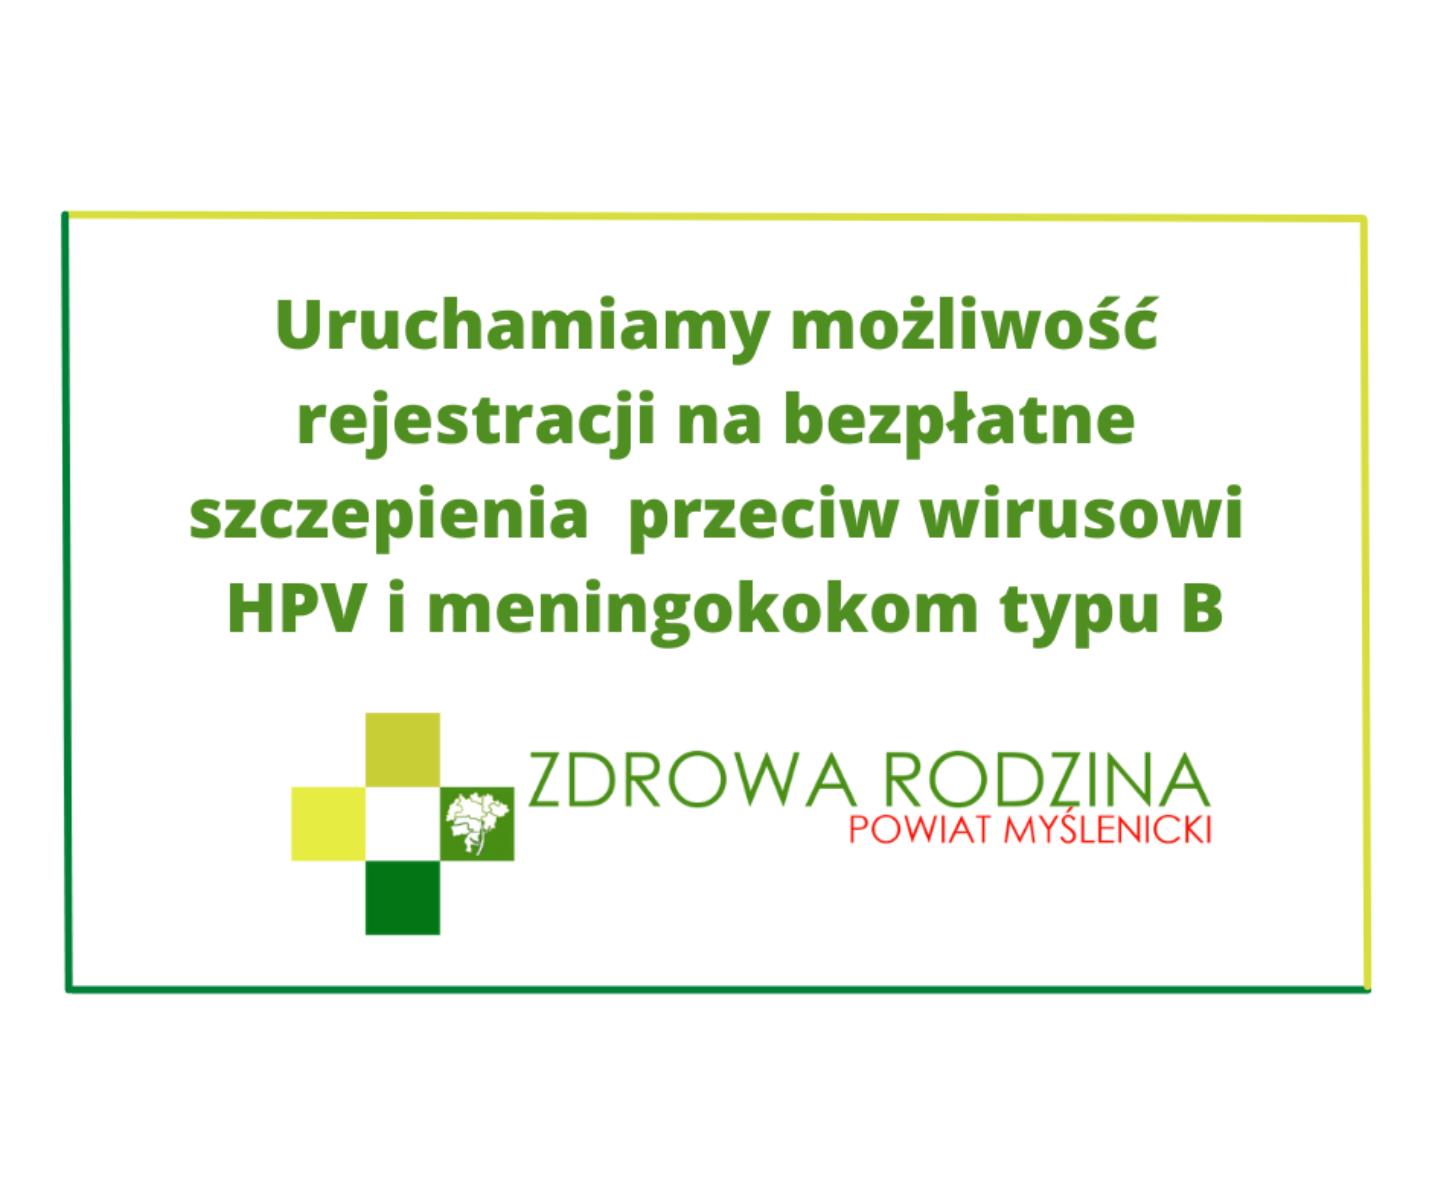 Ruszają bezpłatne szczepienia przeciw wirusowi HPV i meningokokom typ B